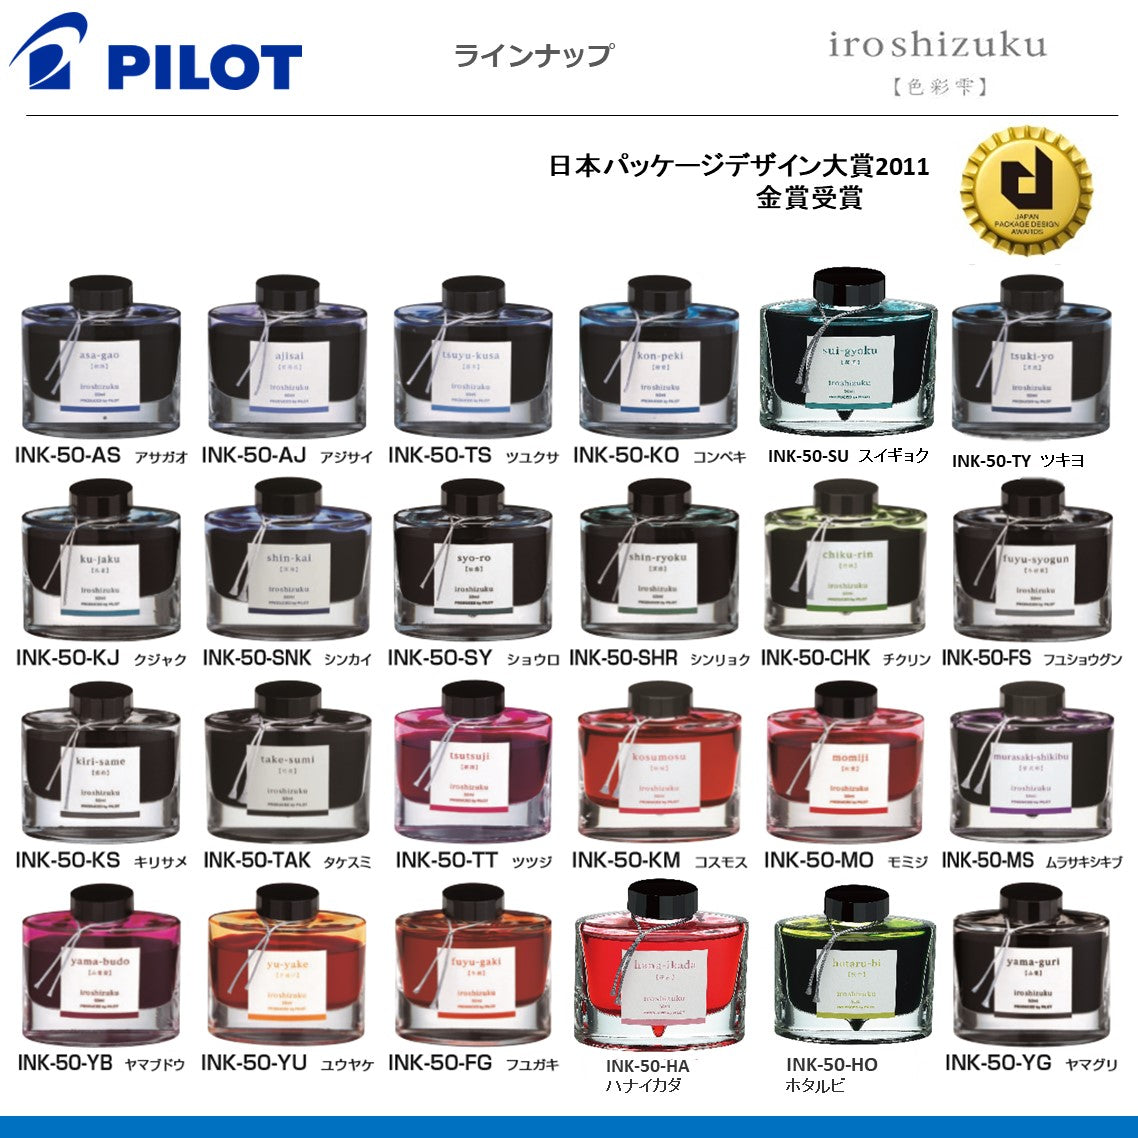 ボトルインク　iroshizuku【色彩雫】万年筆用インキ
INK-50